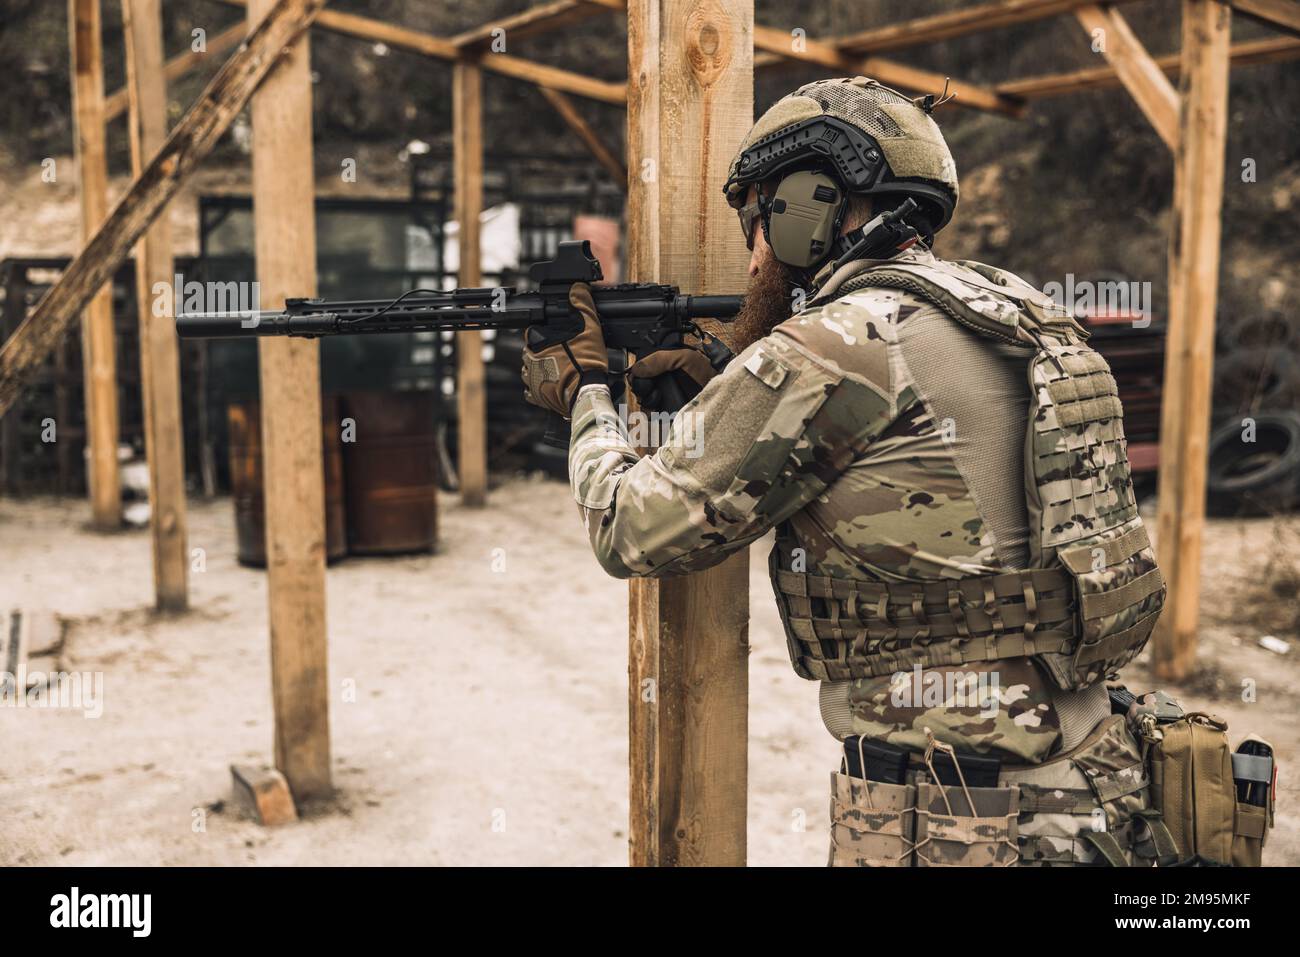 Soldat en camouflage avec un fusil dans les mains Banque D'Images